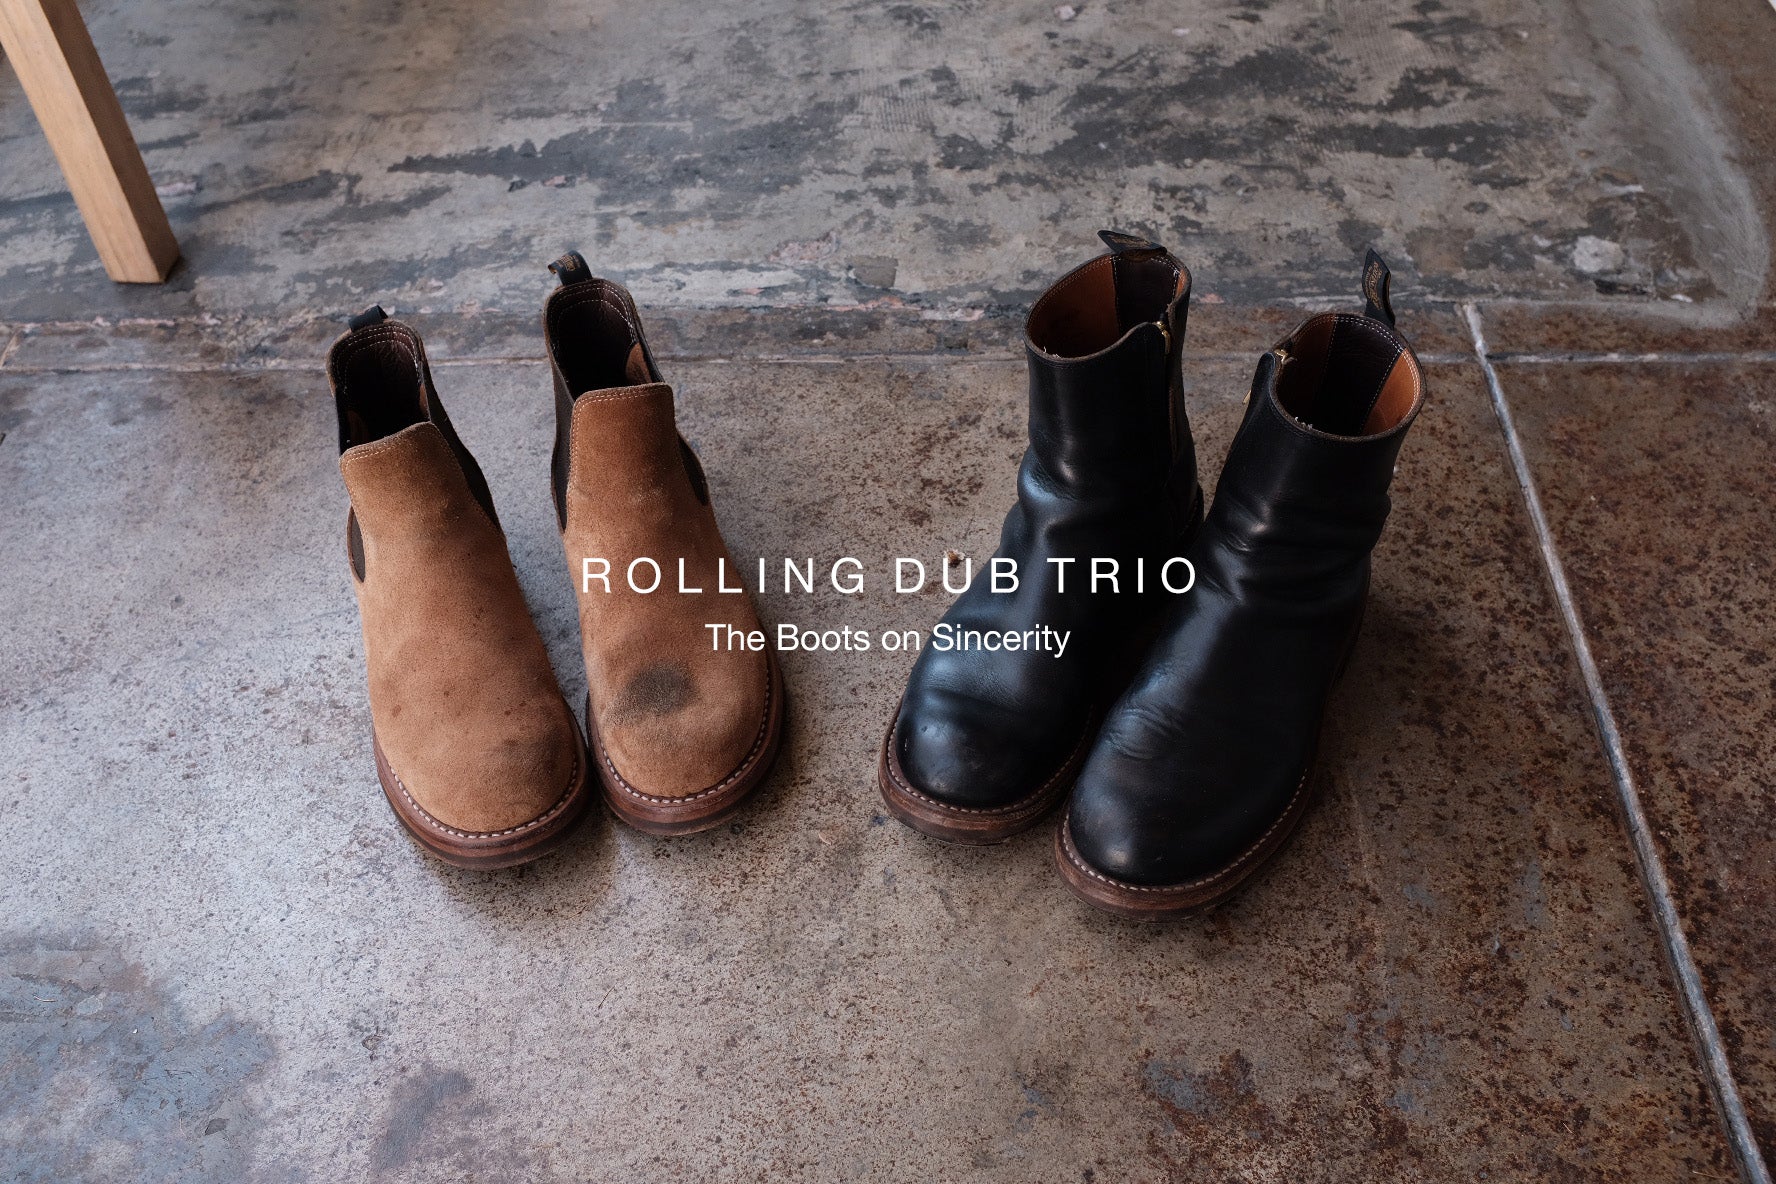 Blog Post No. 16 - Rolling Dub Trio